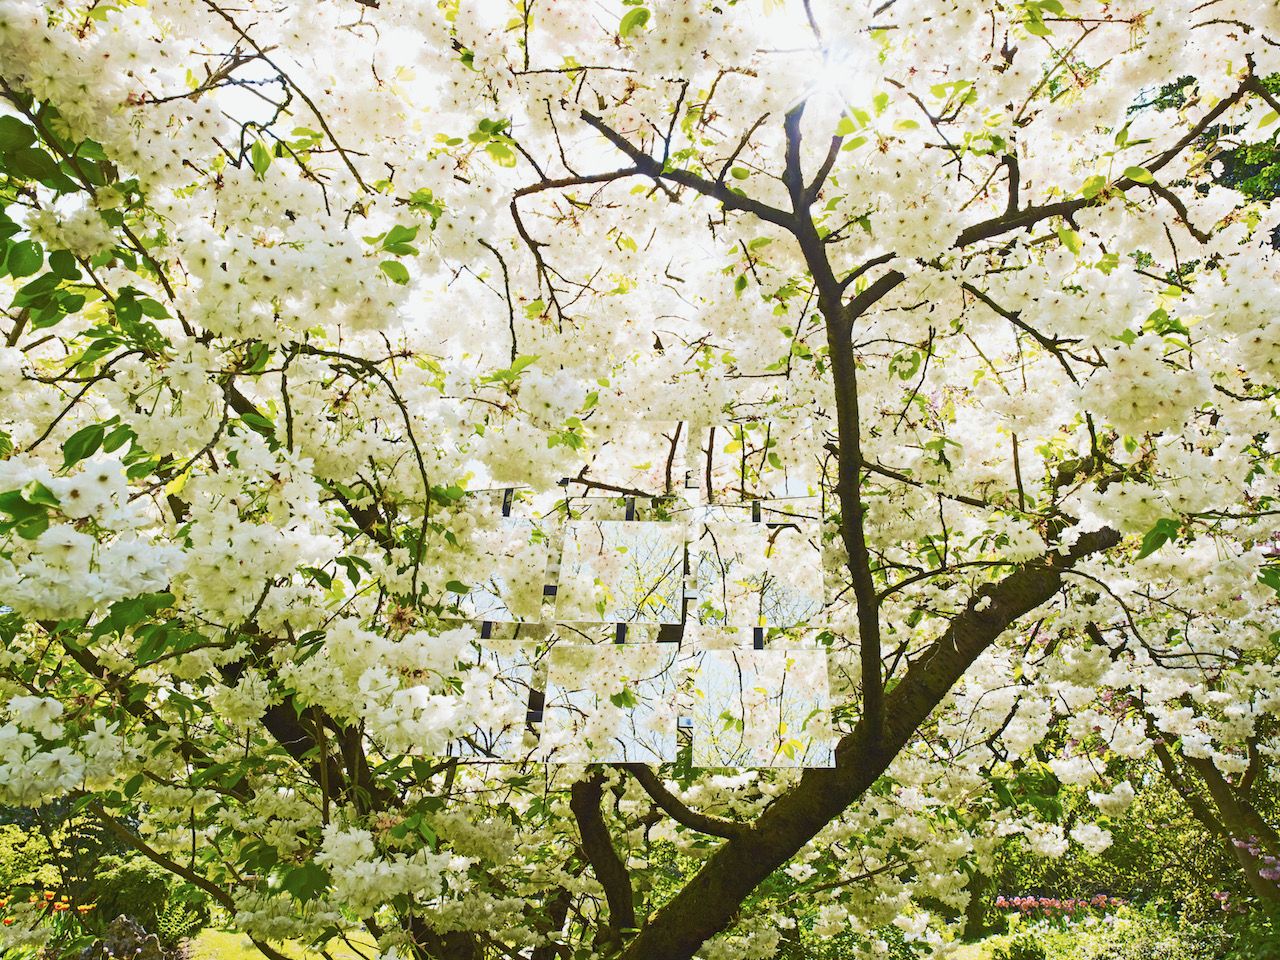 迈克尔-海格尔自然摄影室内景象树冠上的白花和九个排列的镜子